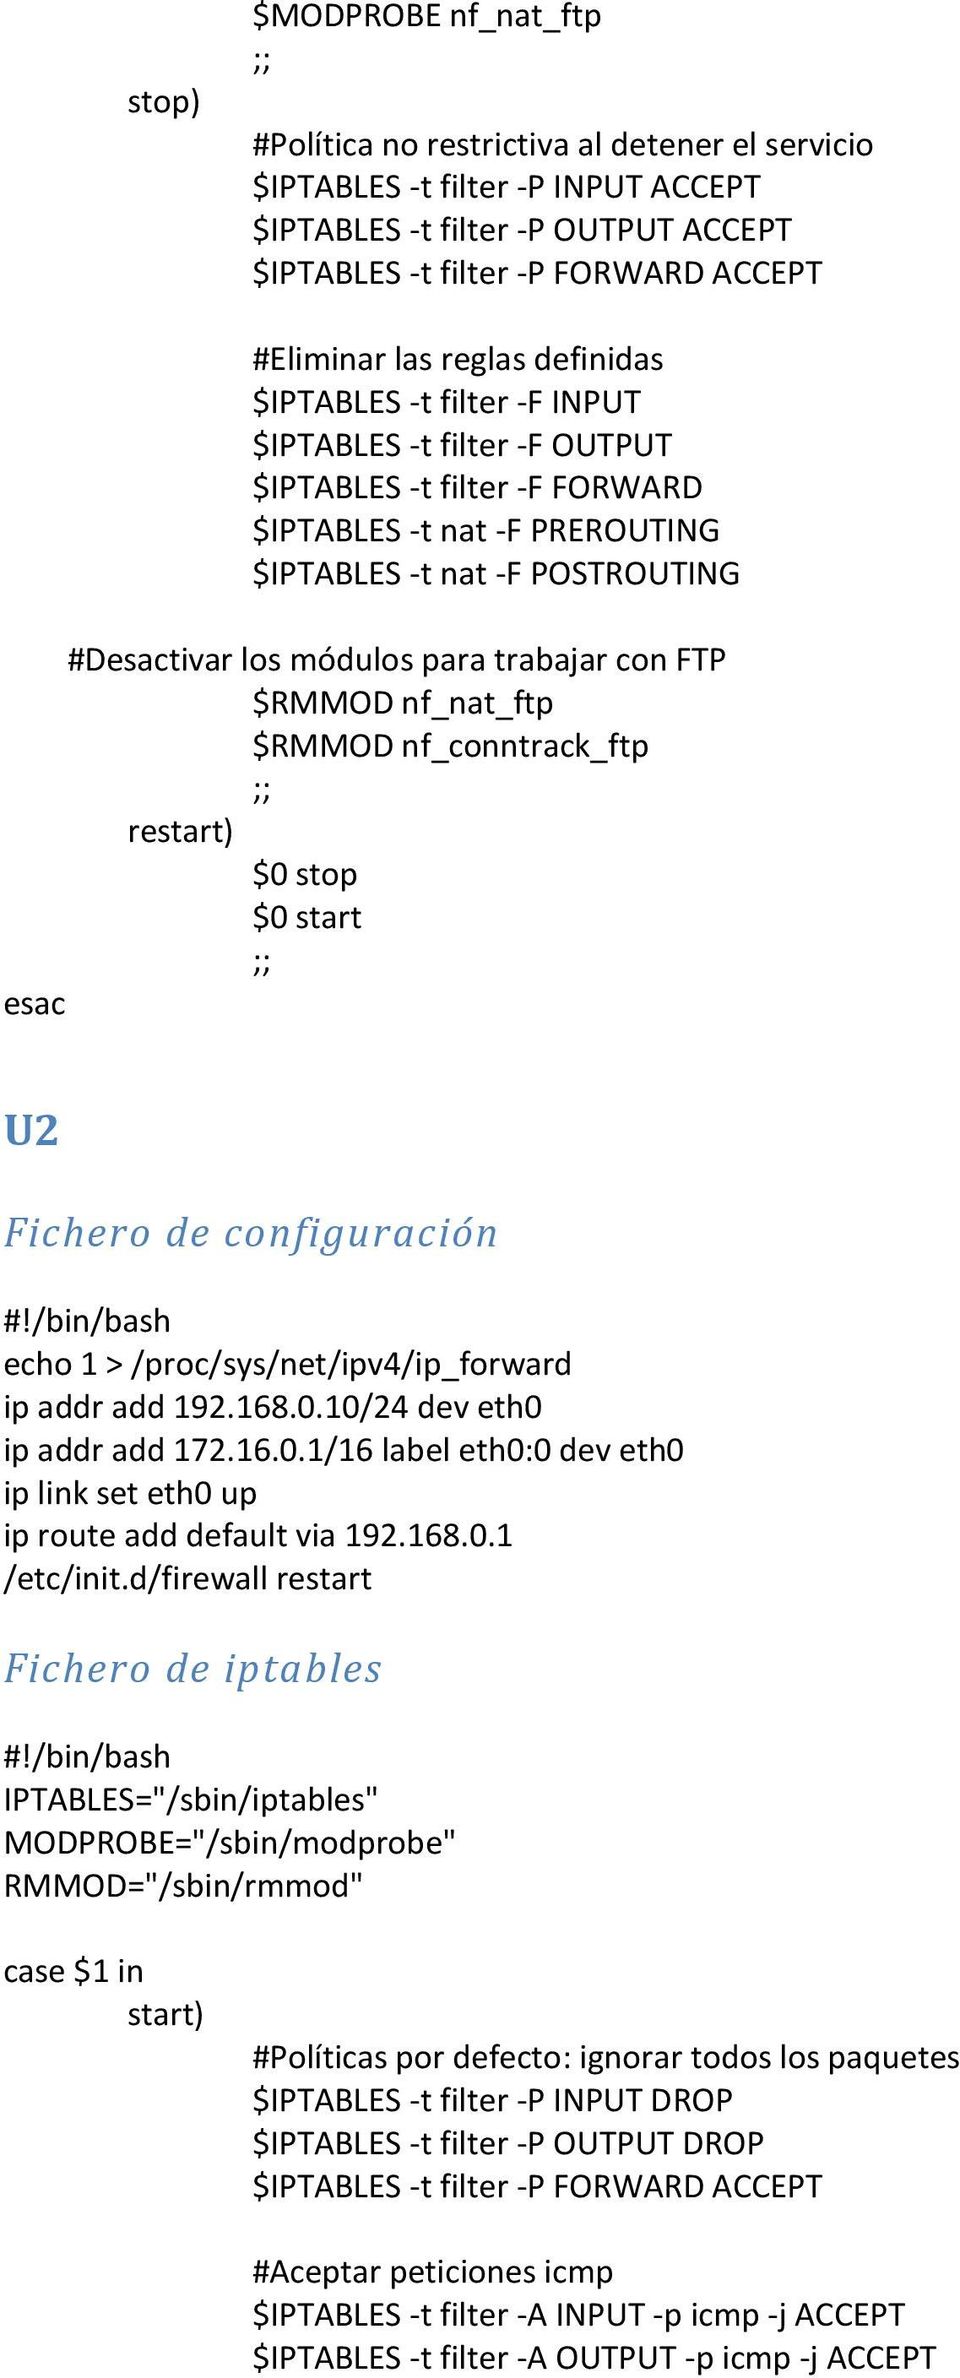 /proc/sys/net/ipv4/ip_forward ip addr add 192.168.0.10/24 dev eth0 ip addr add 172.16.0.1/16 label eth0:0 dev eth0 ip route add default via 192.168.0.1 /etc/init.